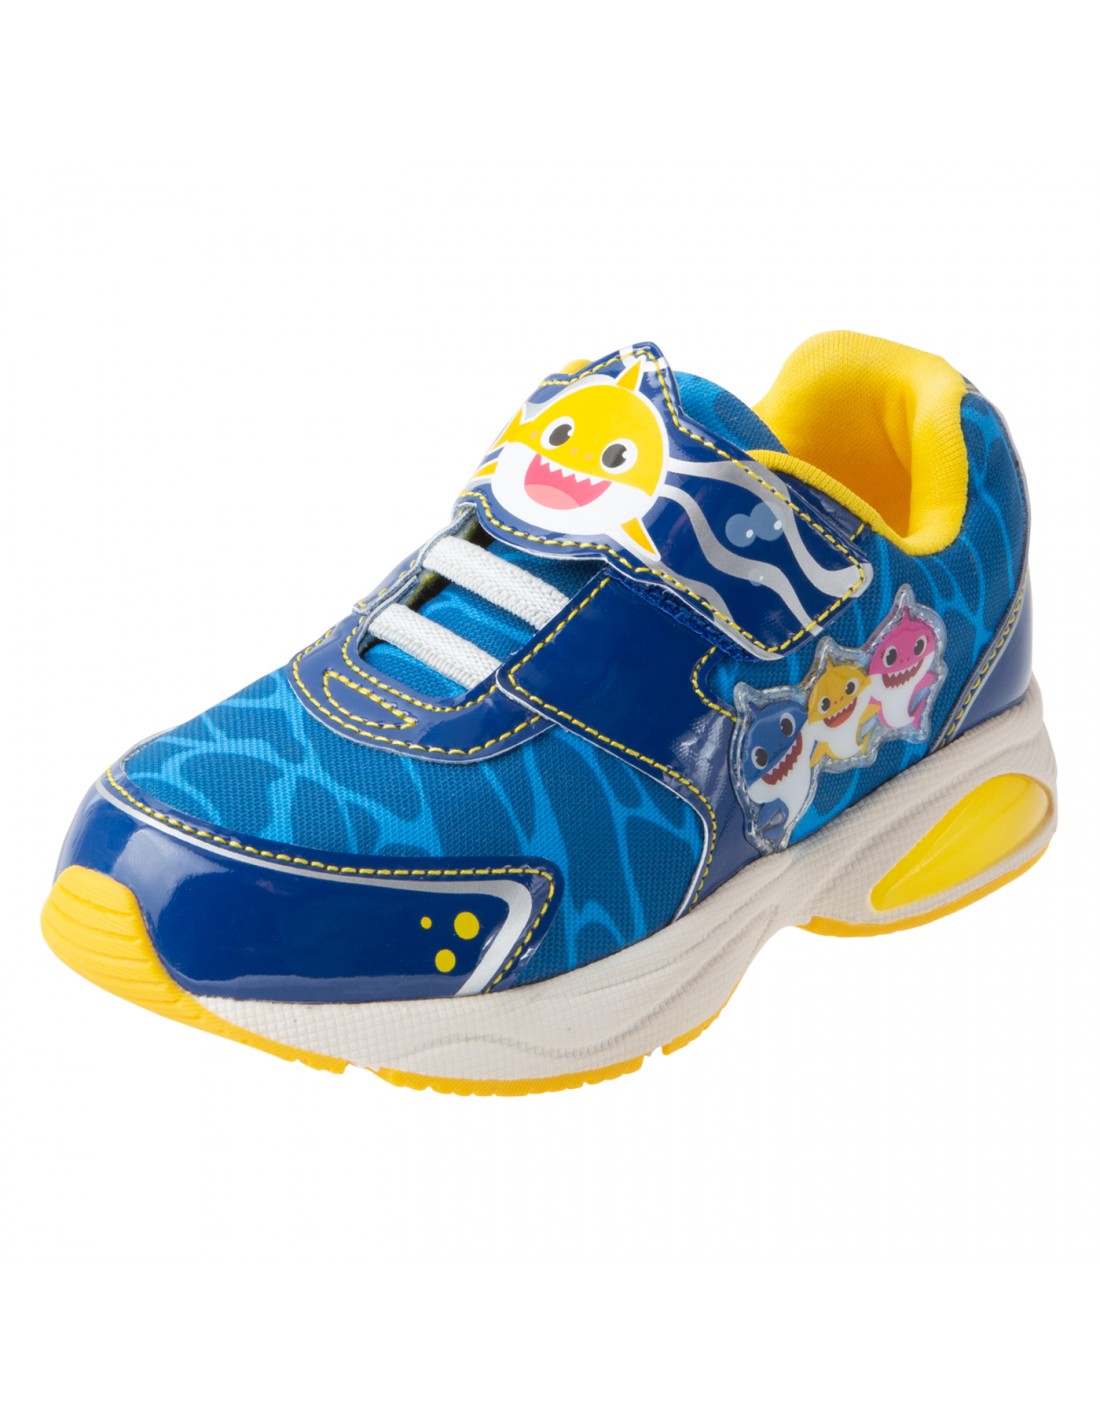 Zapatos deportivos para niño peqieño